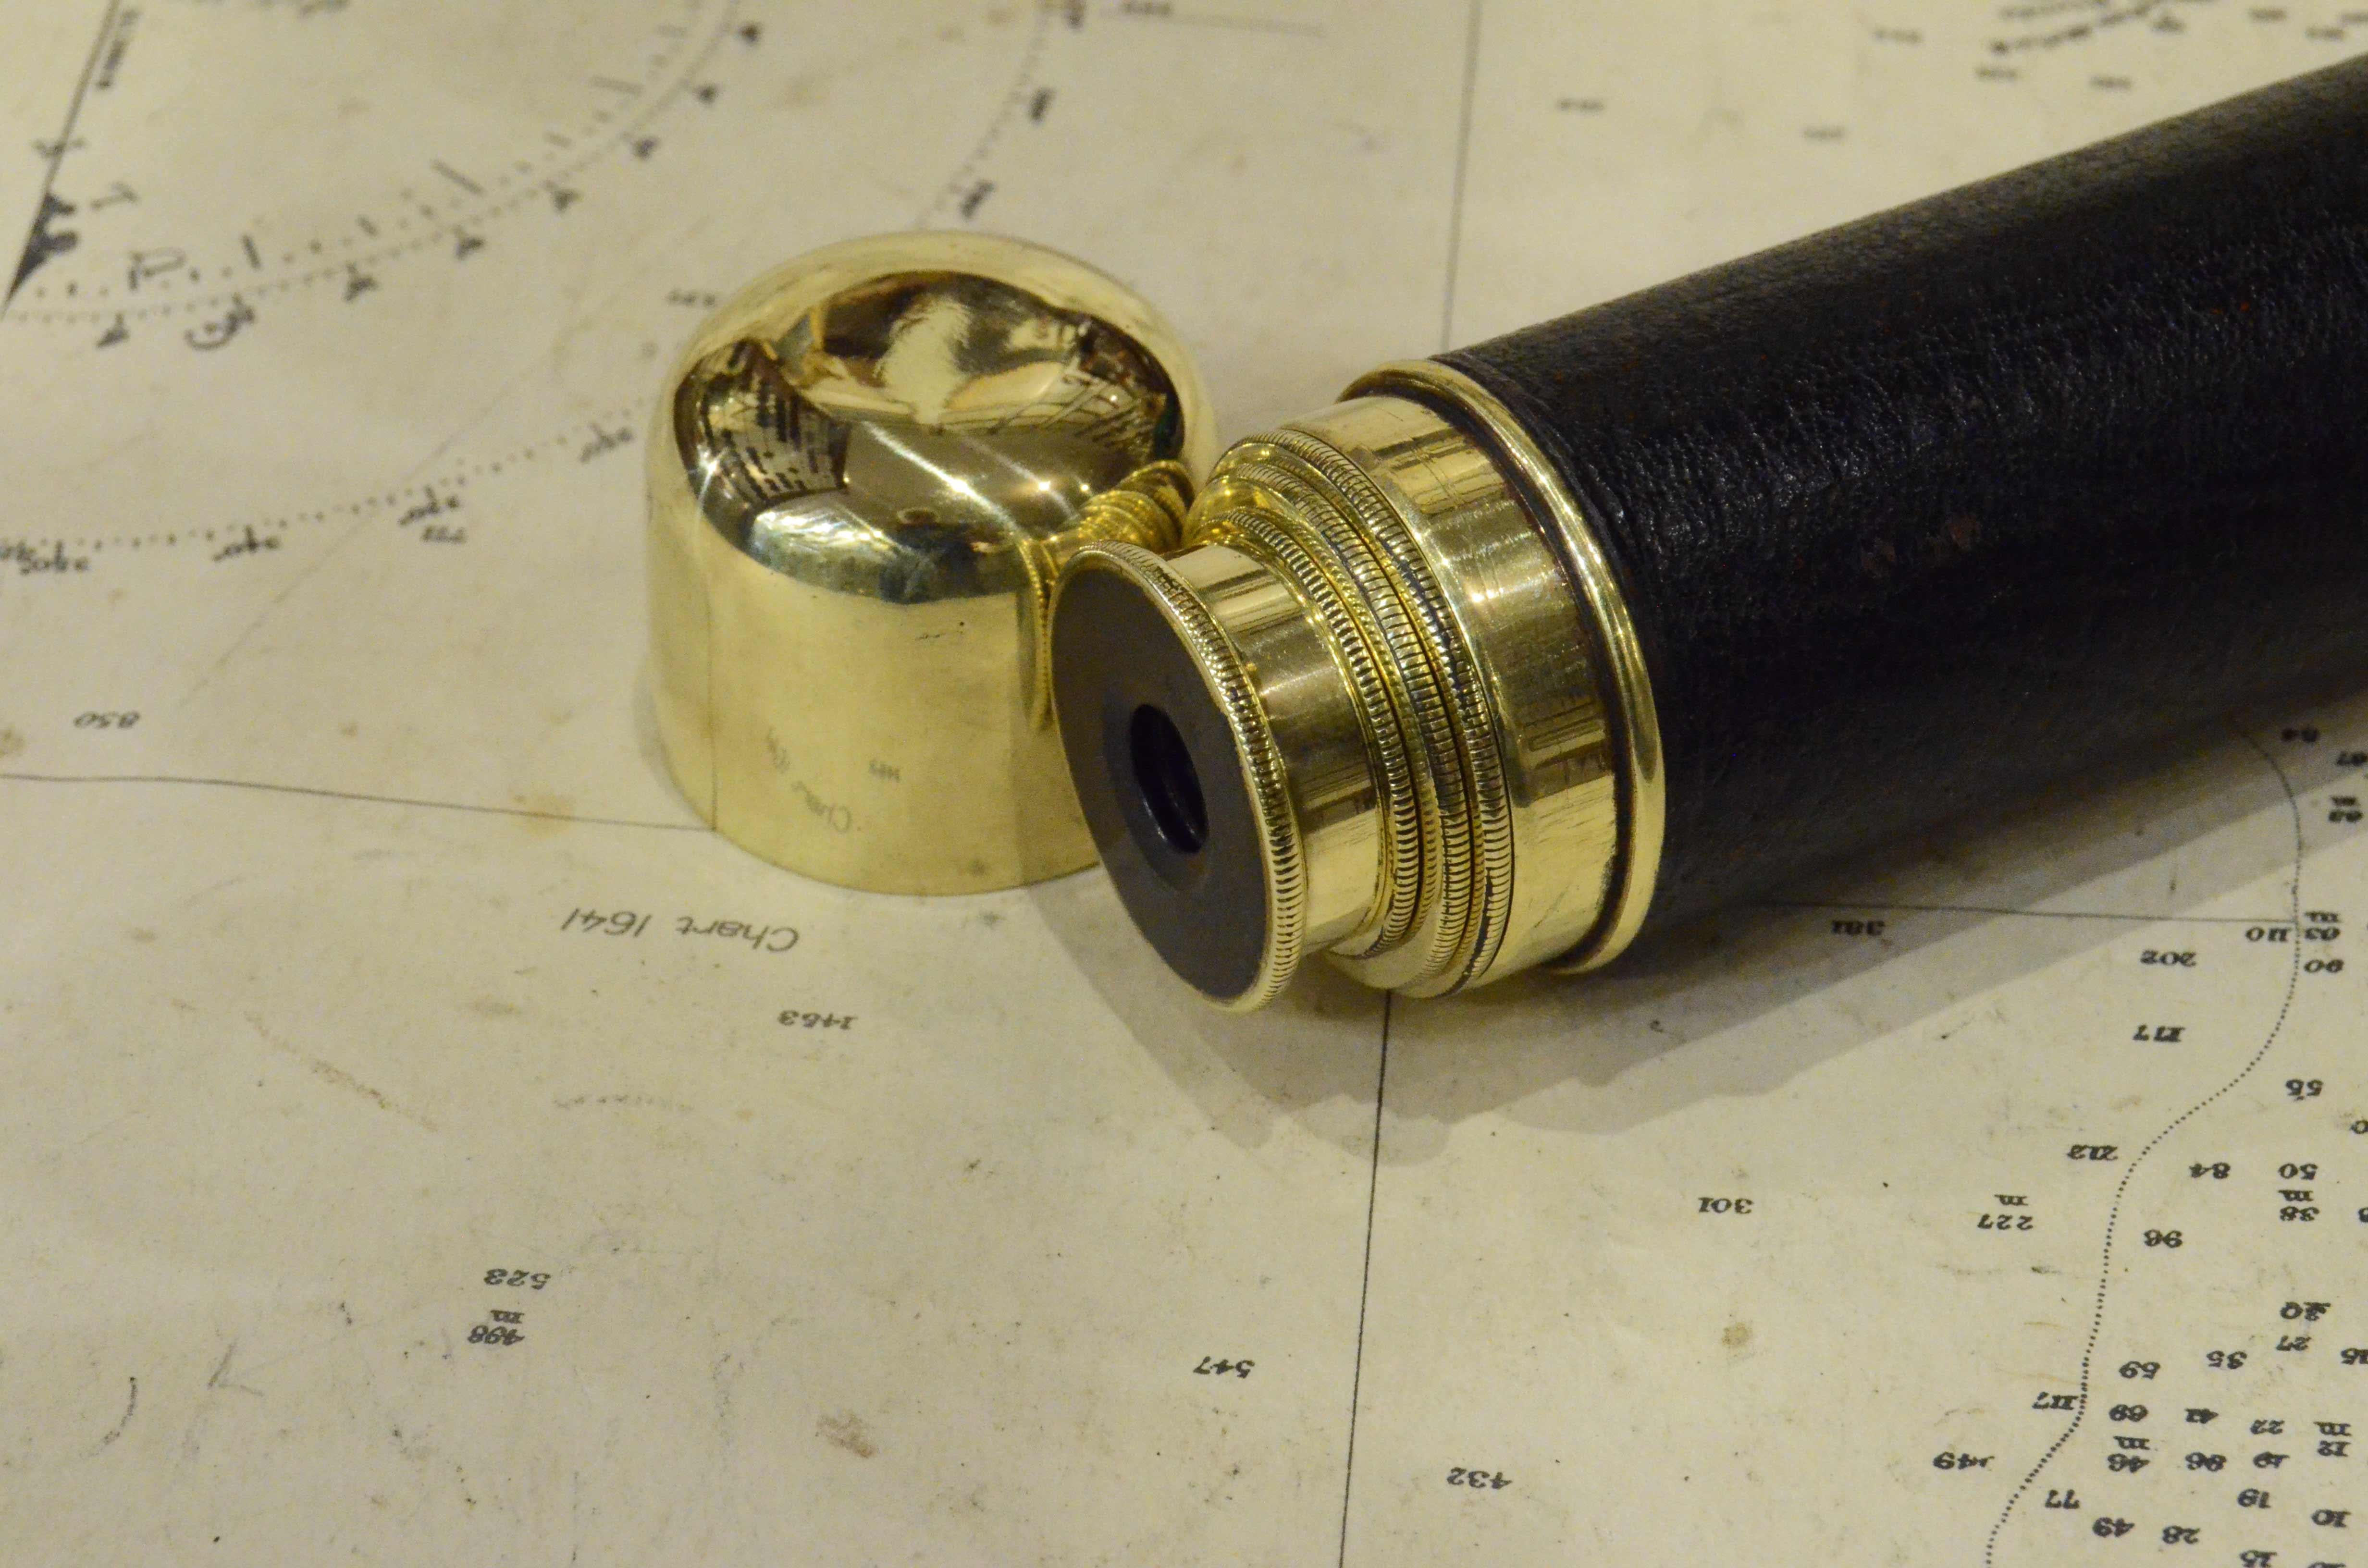 1870s French Small Brass Telescope Small Antique Original Scientific Instrument 1